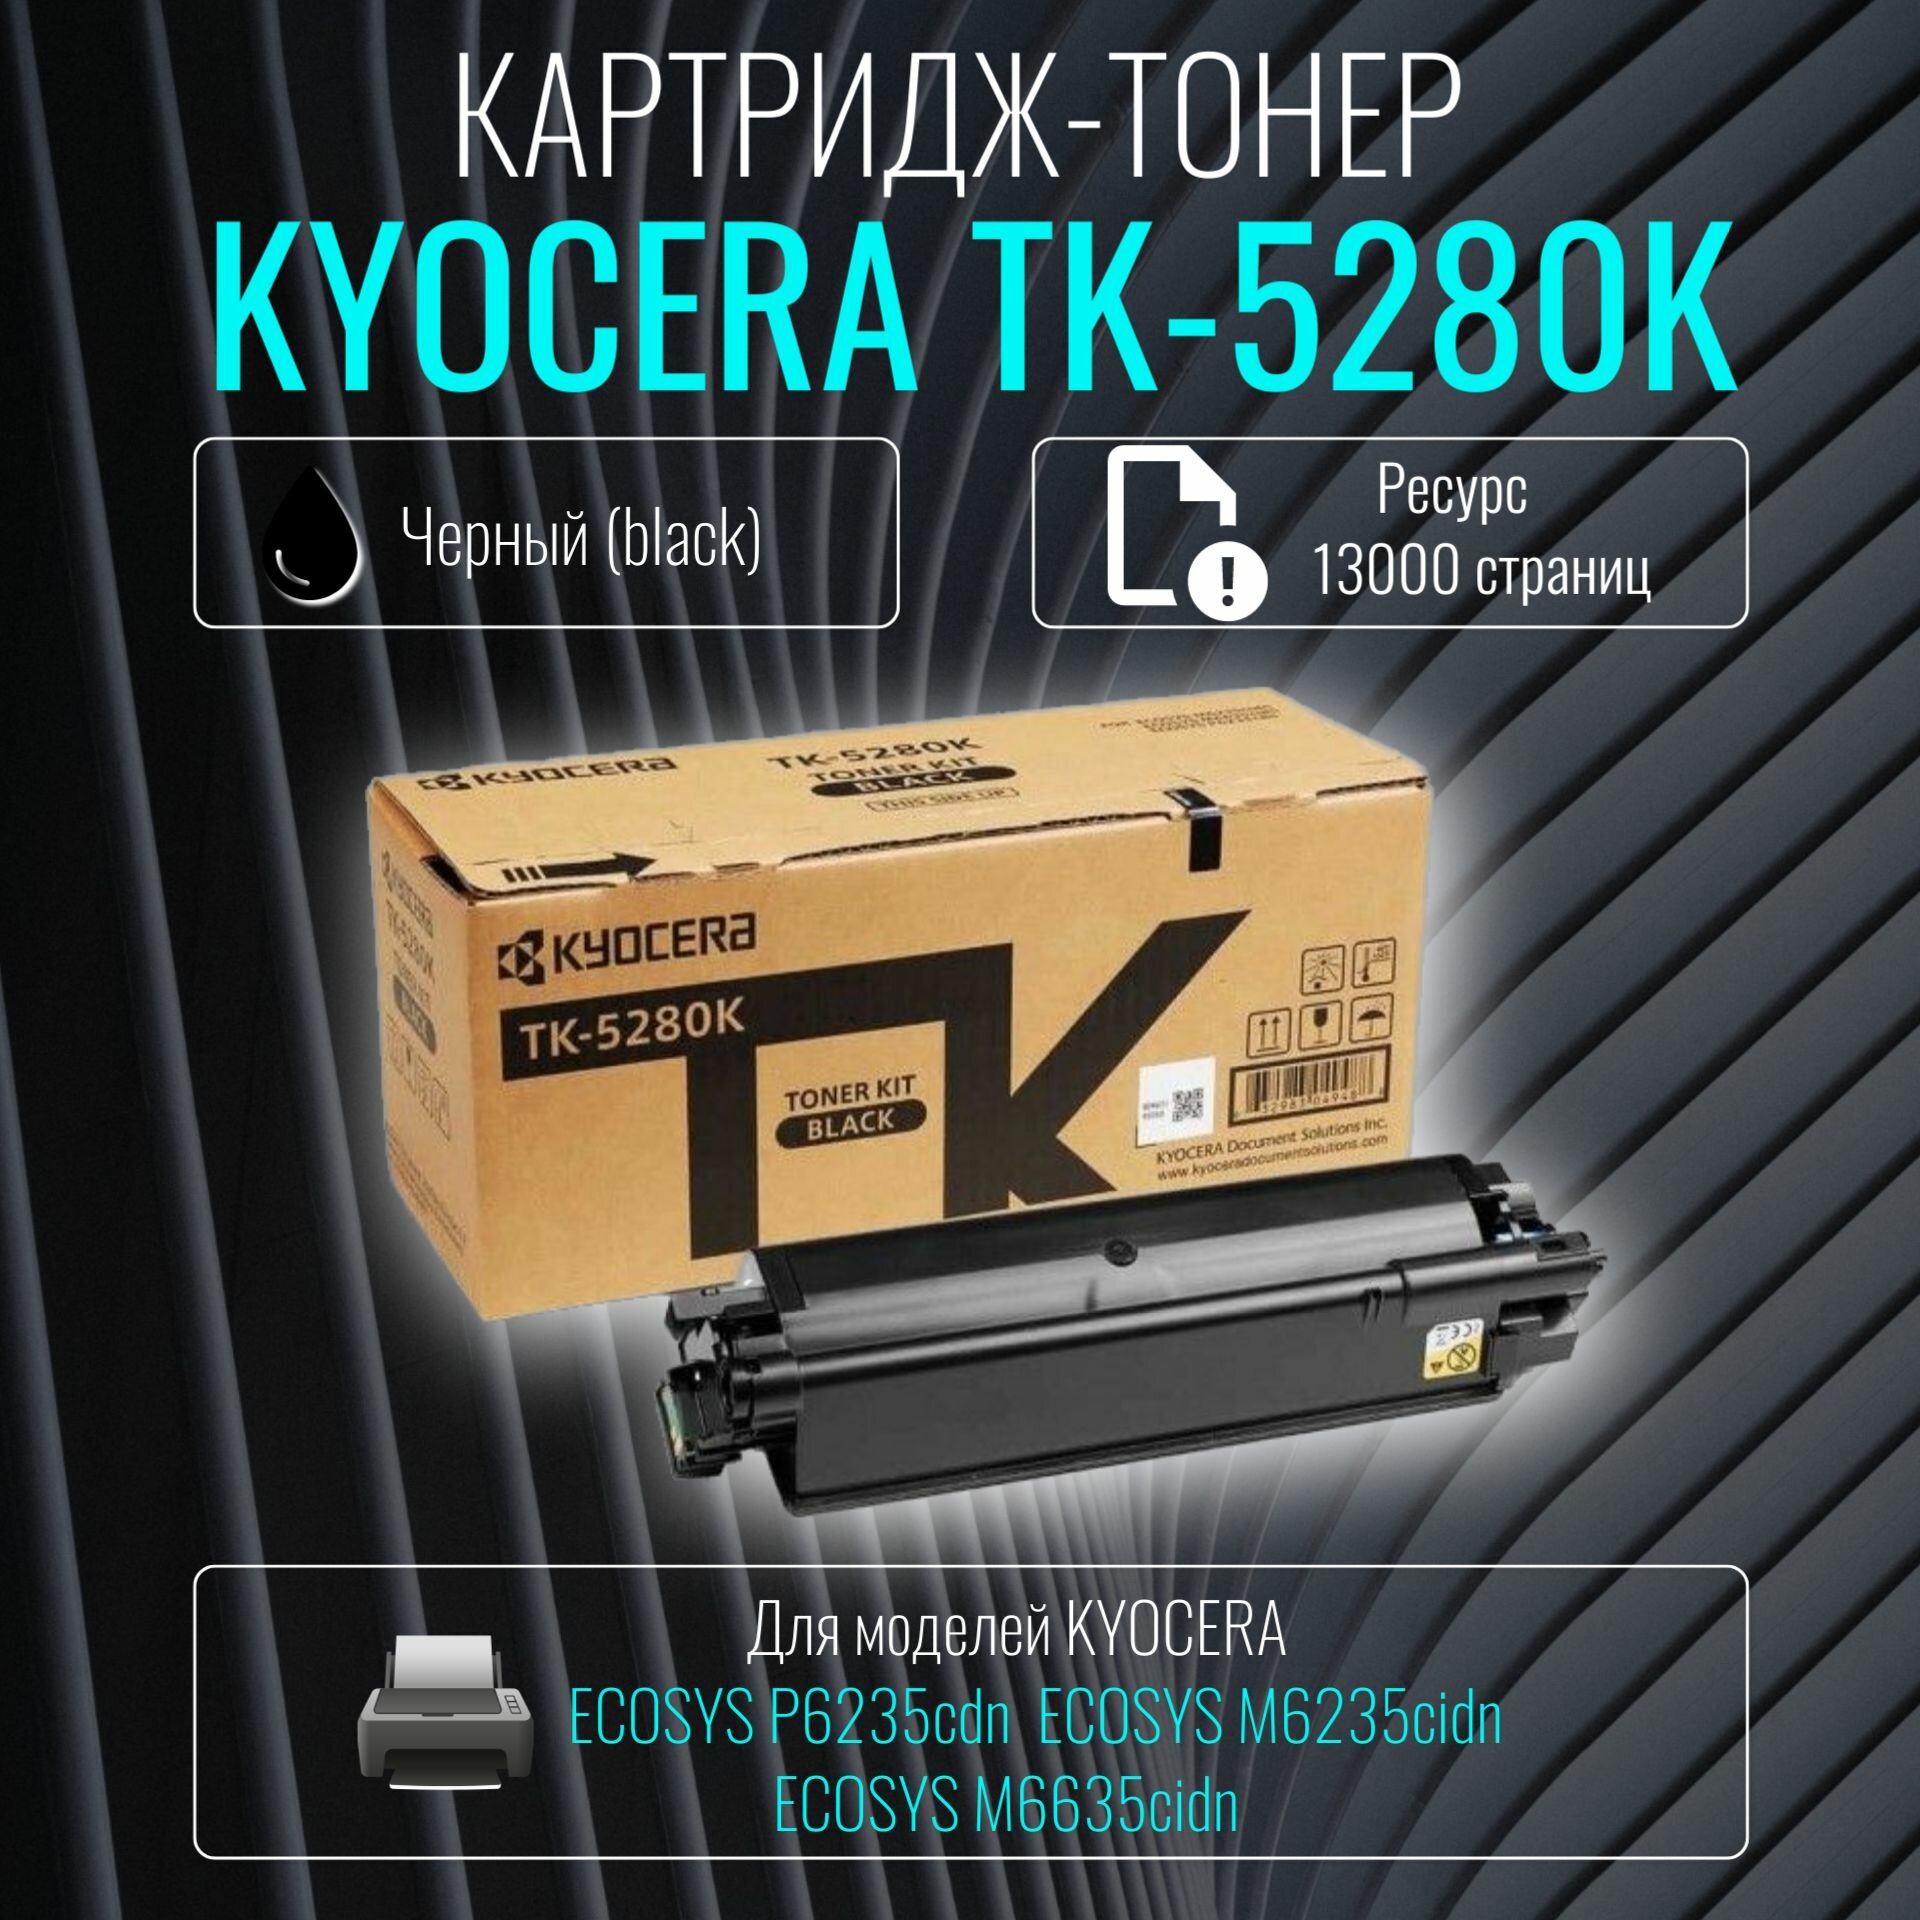 Лазерный картридж Kyocera TK-5280K черный ресурс 13 000 страниц